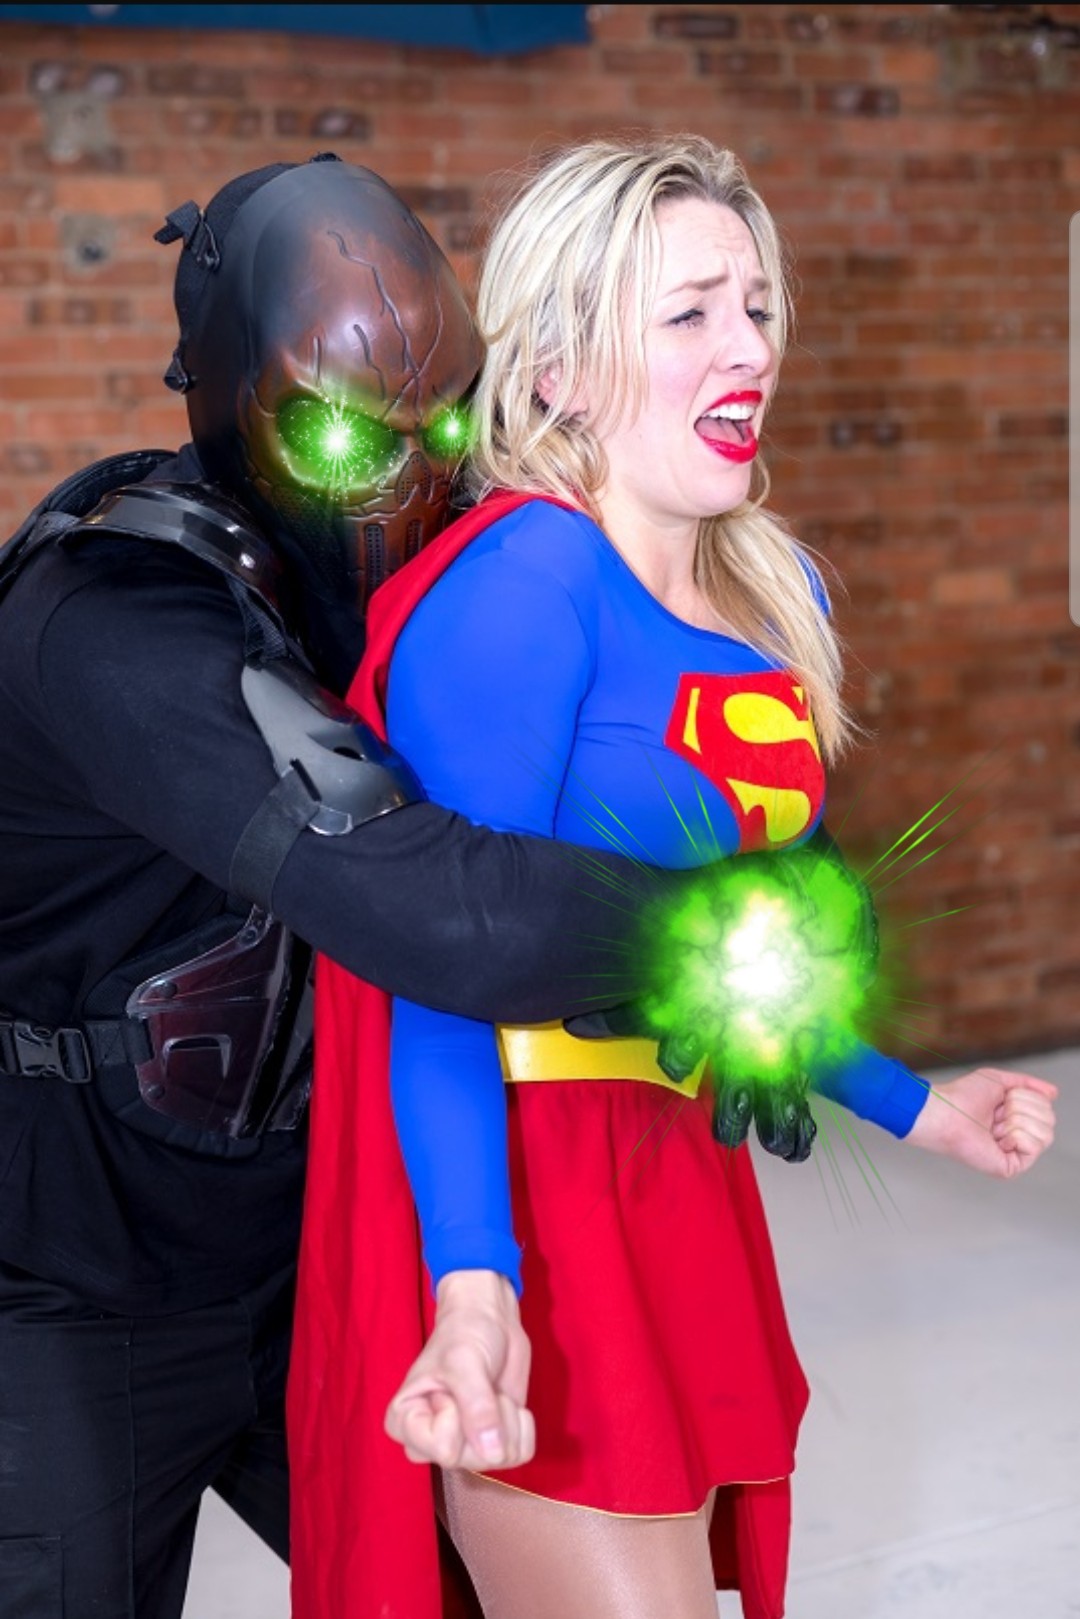 kryptonite supergirl bearhug roleplay image by @rp707.